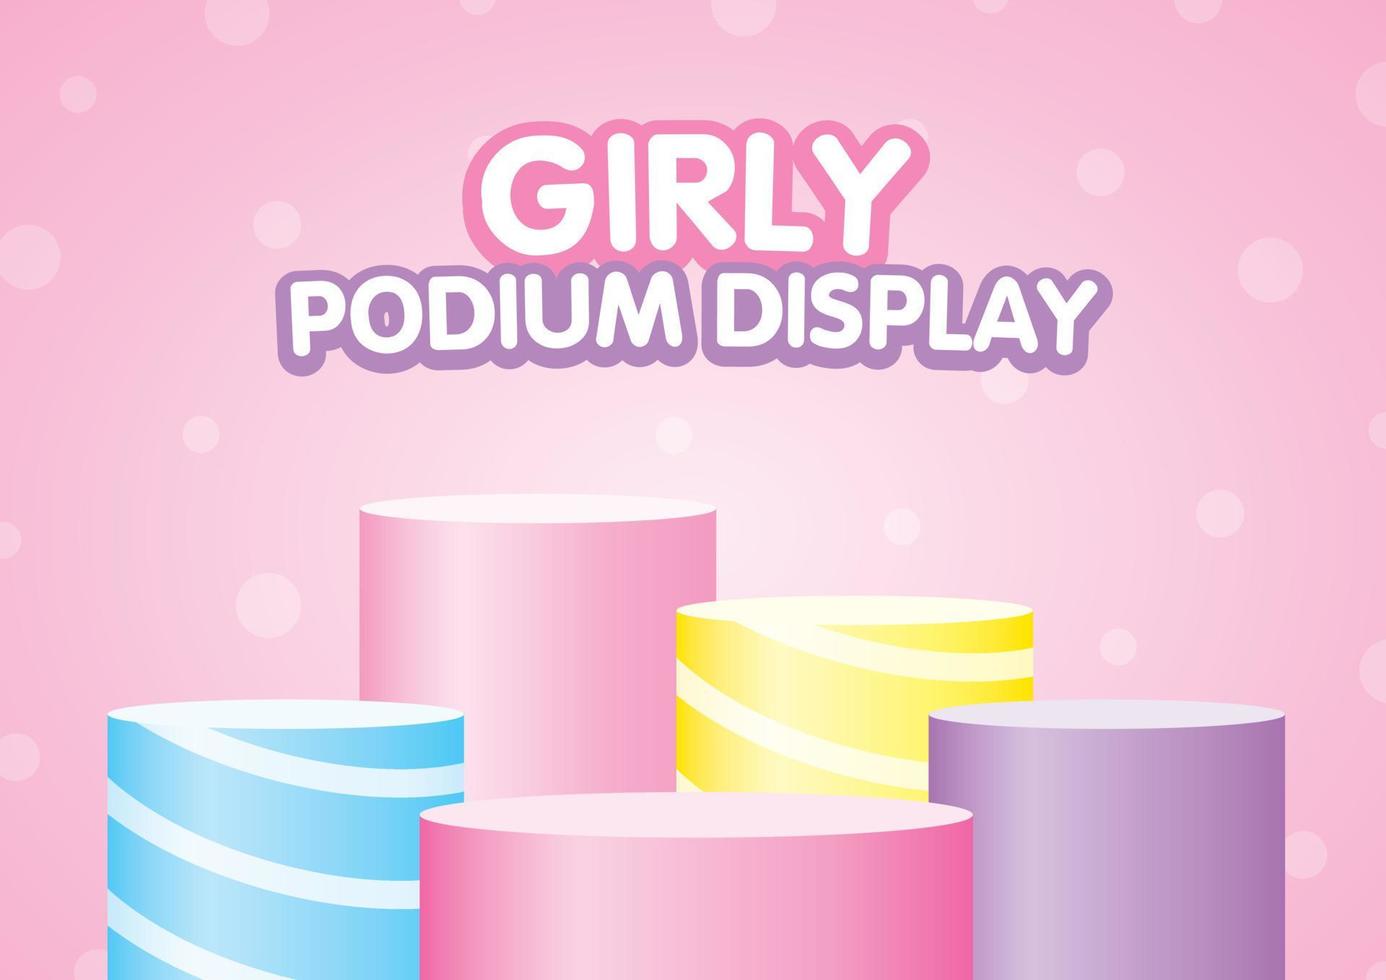 söt färgglad pastell podium display set 3d illustration vektor på härlig rosa prick bakgrund i tjej stil för att sätta ditt söta föremål